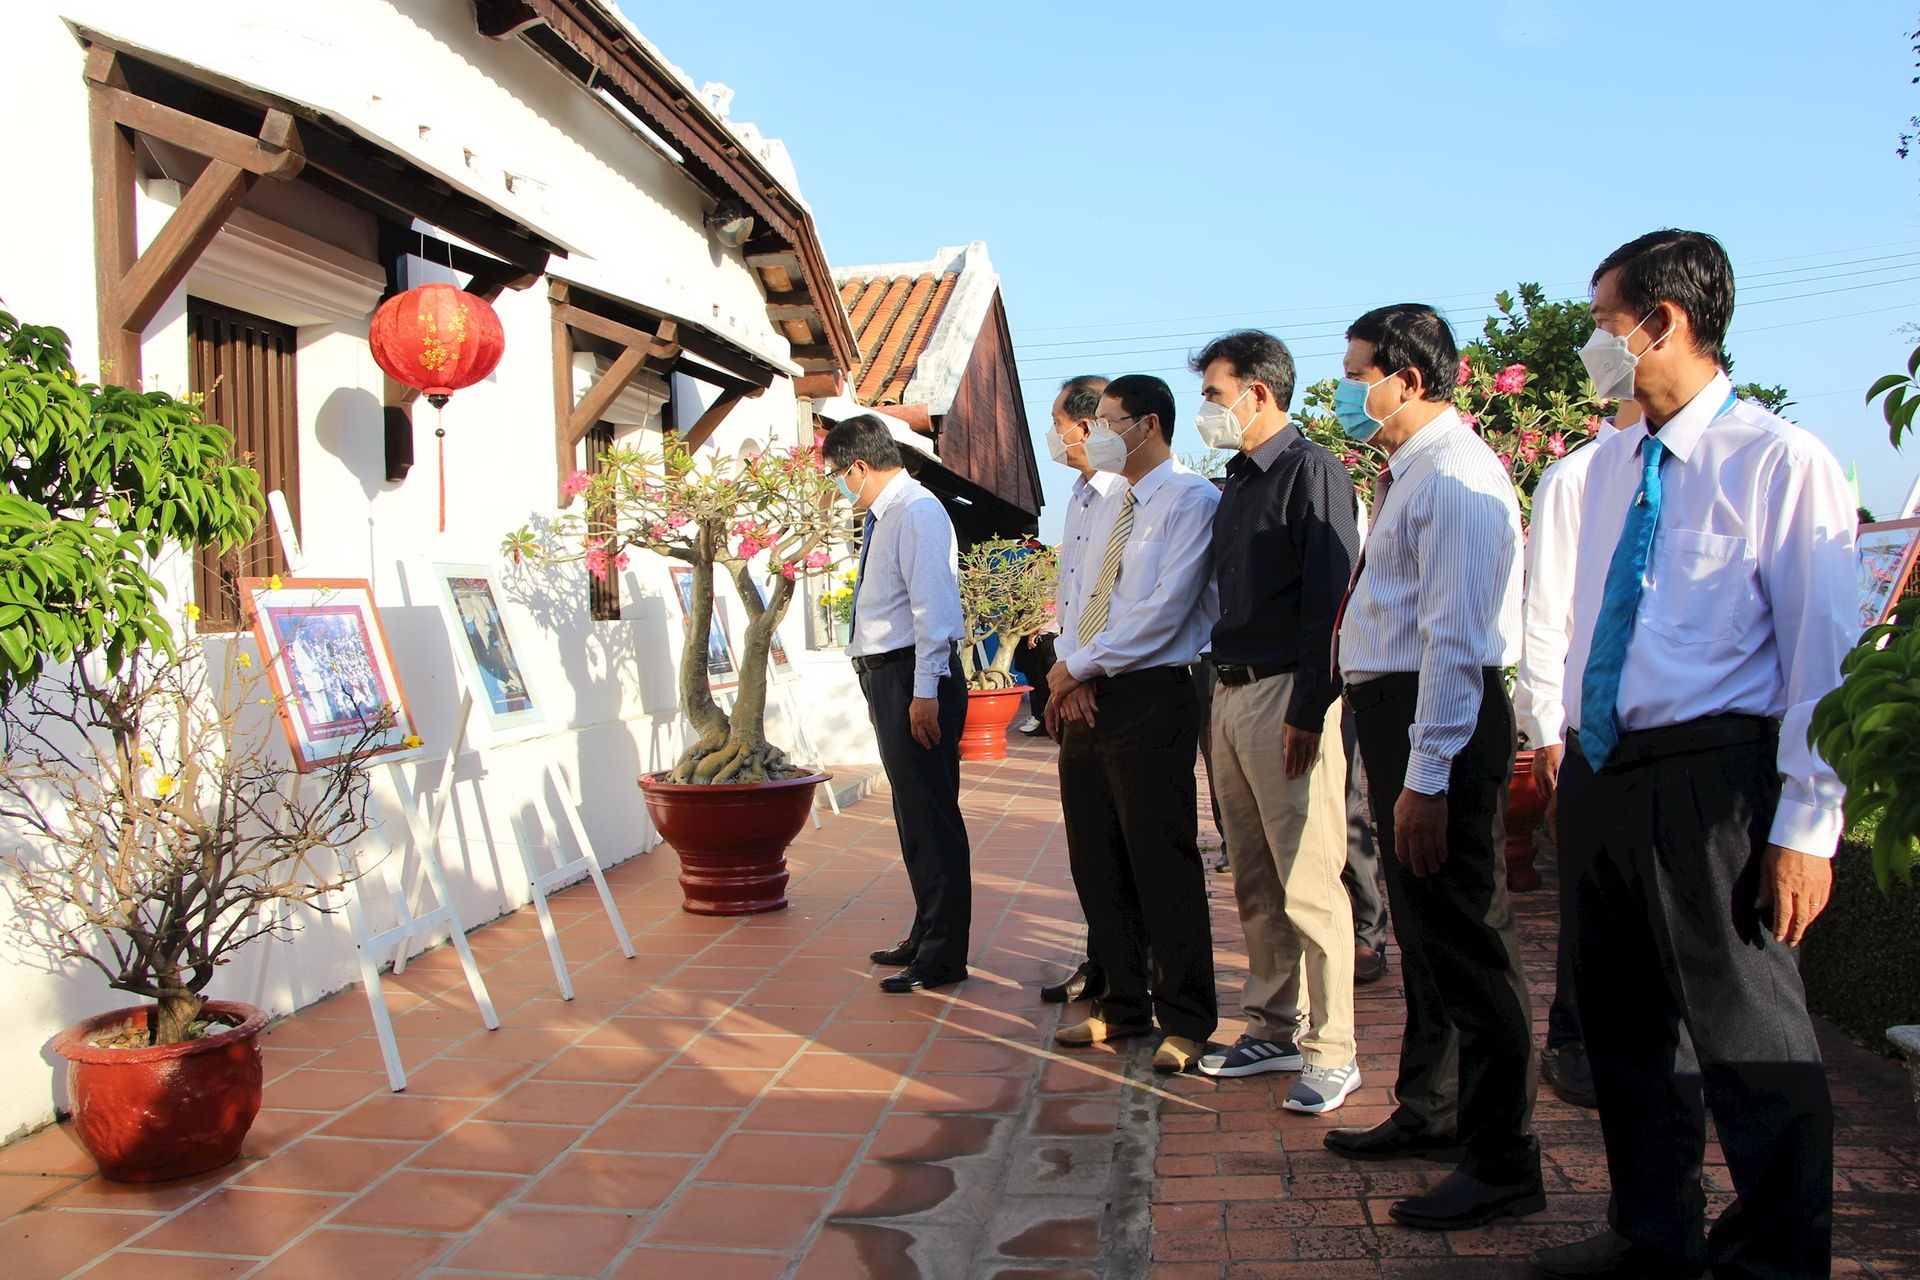 Tết Nhâm Dần, nhiều du khách đến tham quan Bảo tàng Hồ Chí Minh chi nhánh Bình Thuận - Ảnh 1.